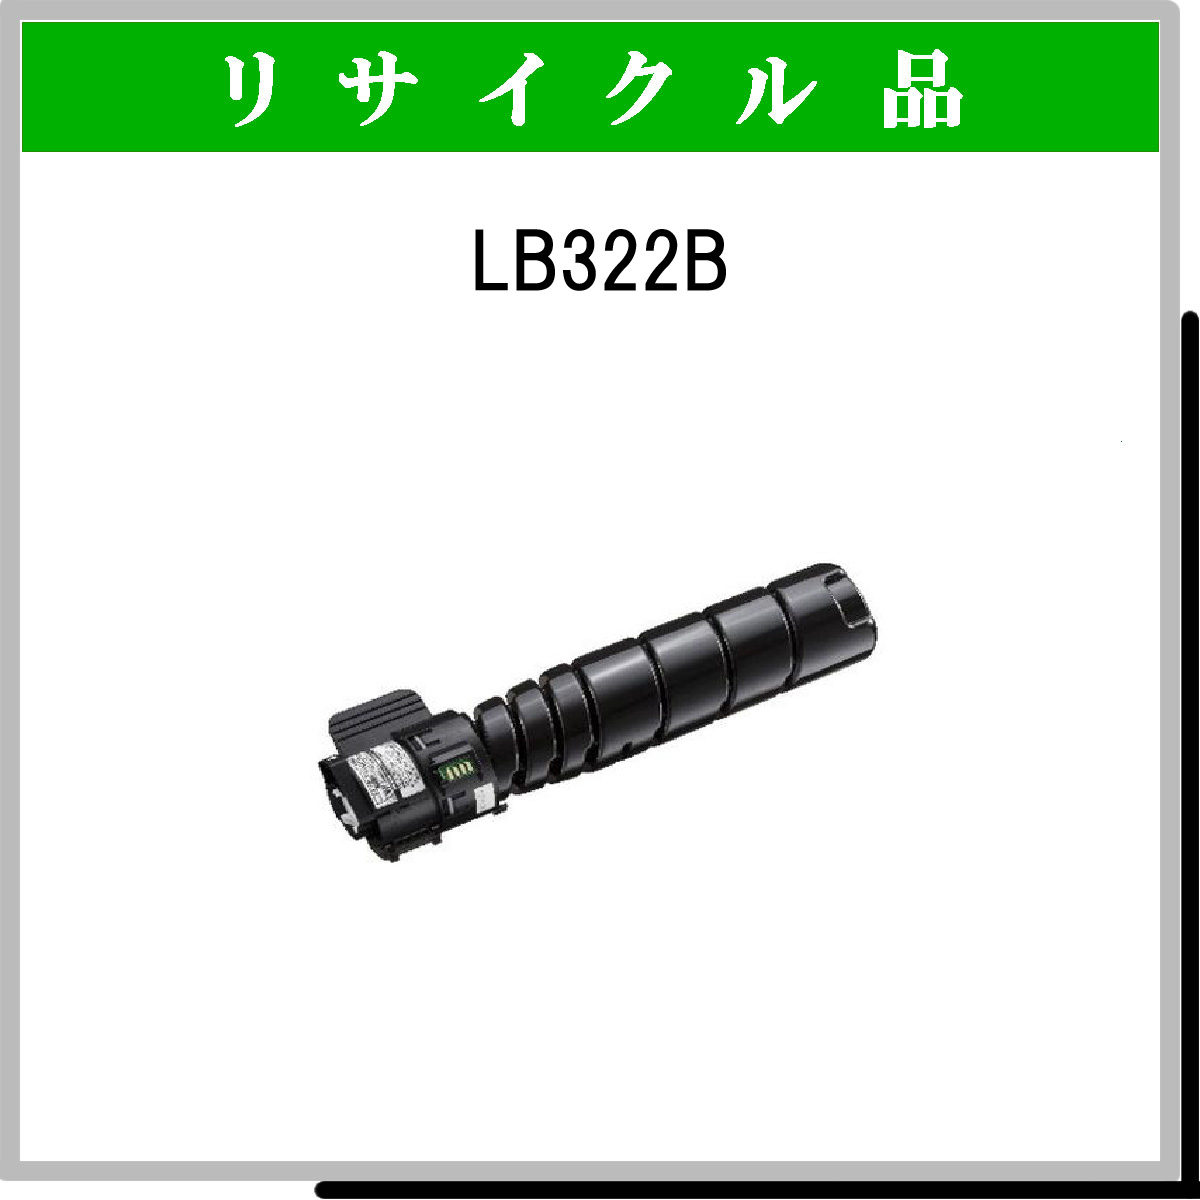 LB322B